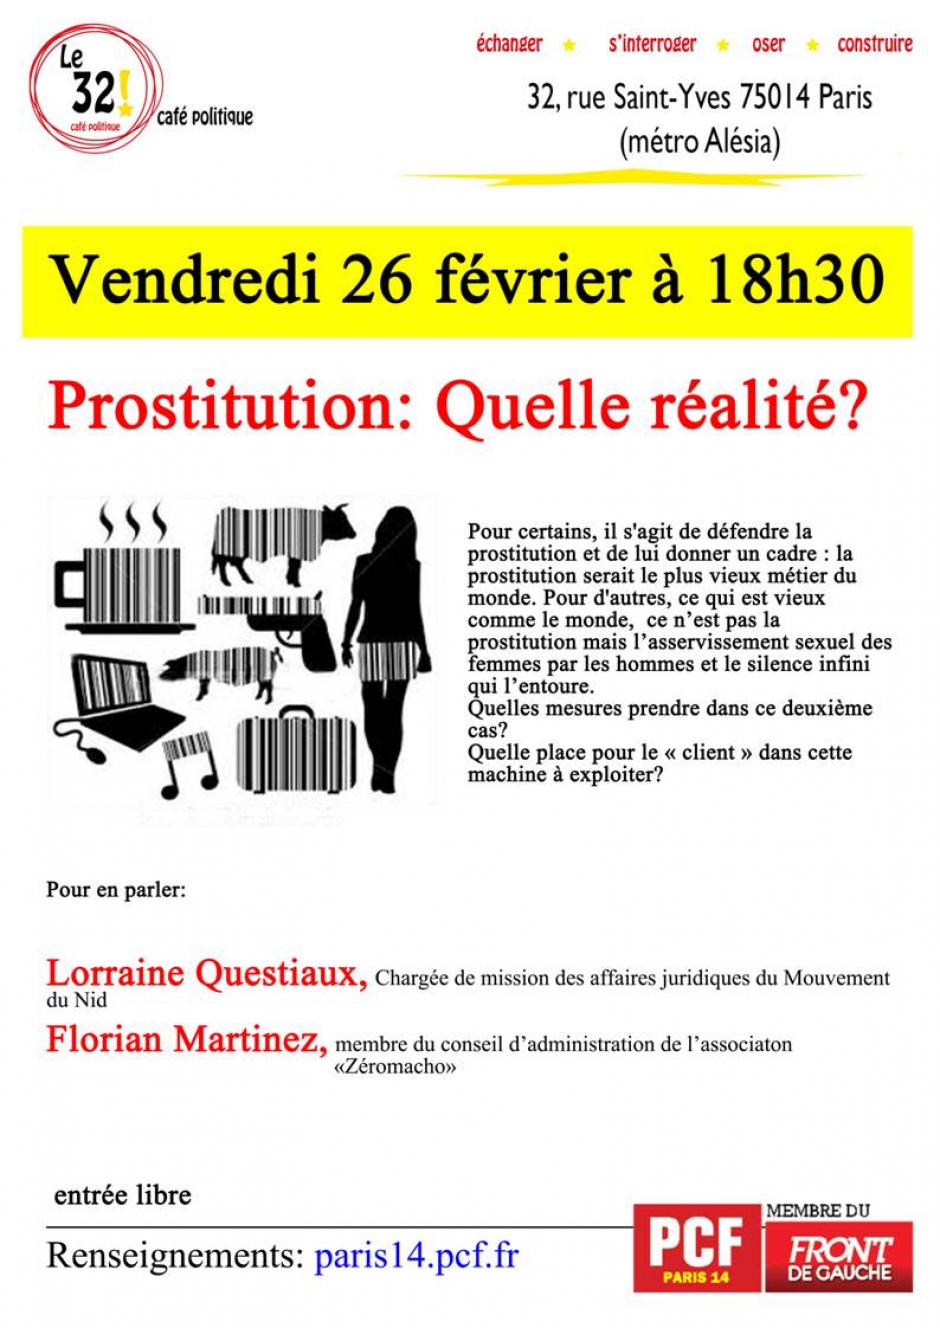 Prostitution: Quelle réalité?